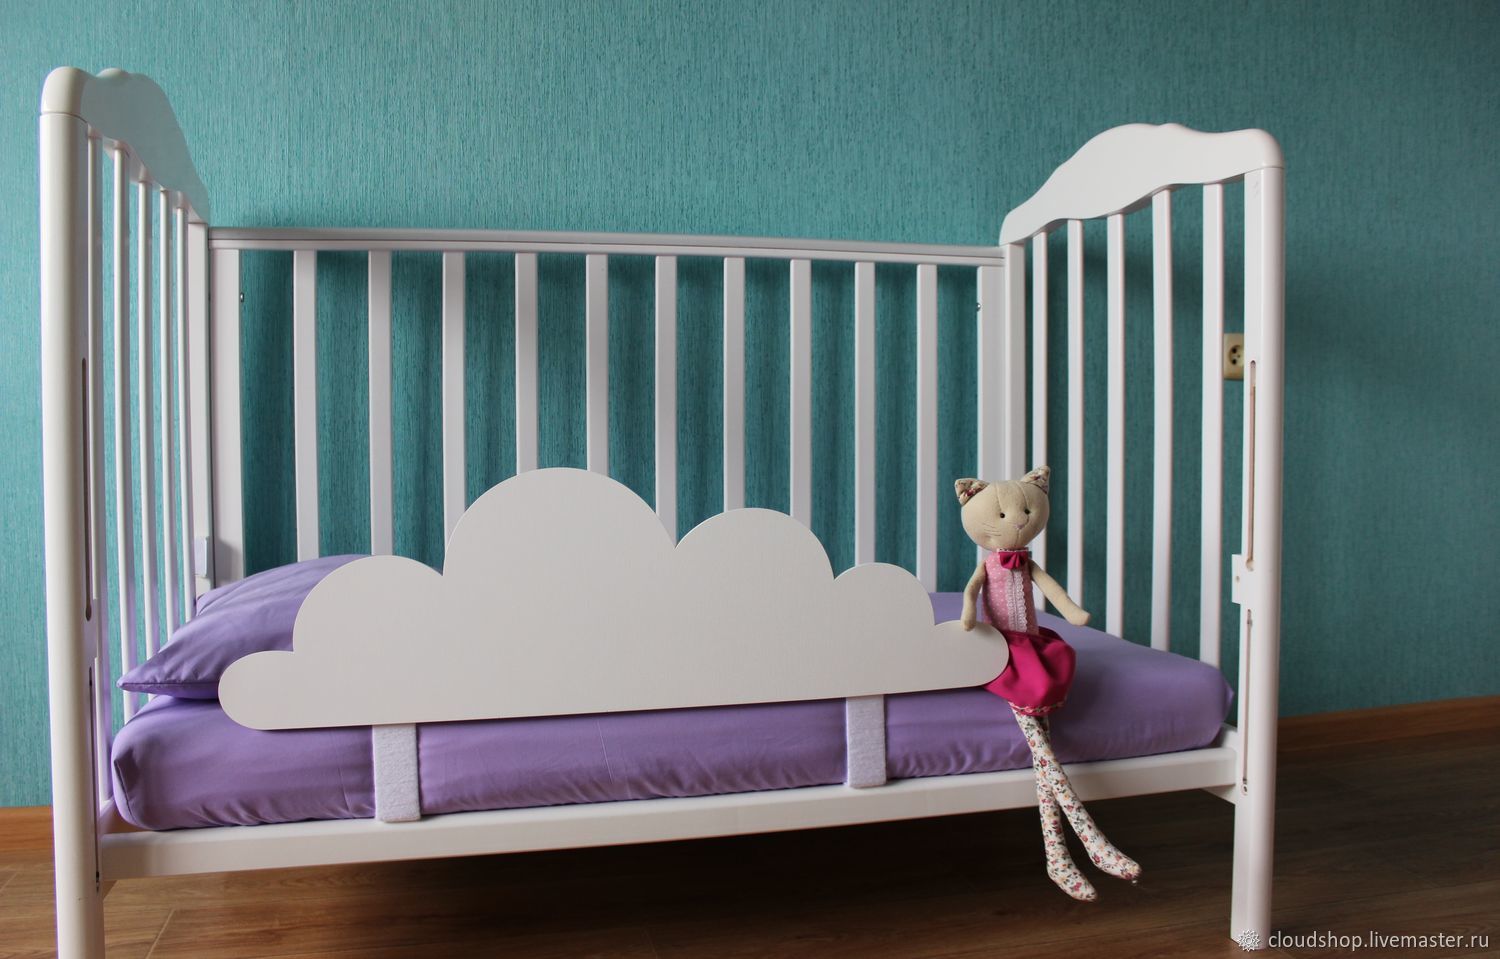 Бортик для детской кроватки «стена»